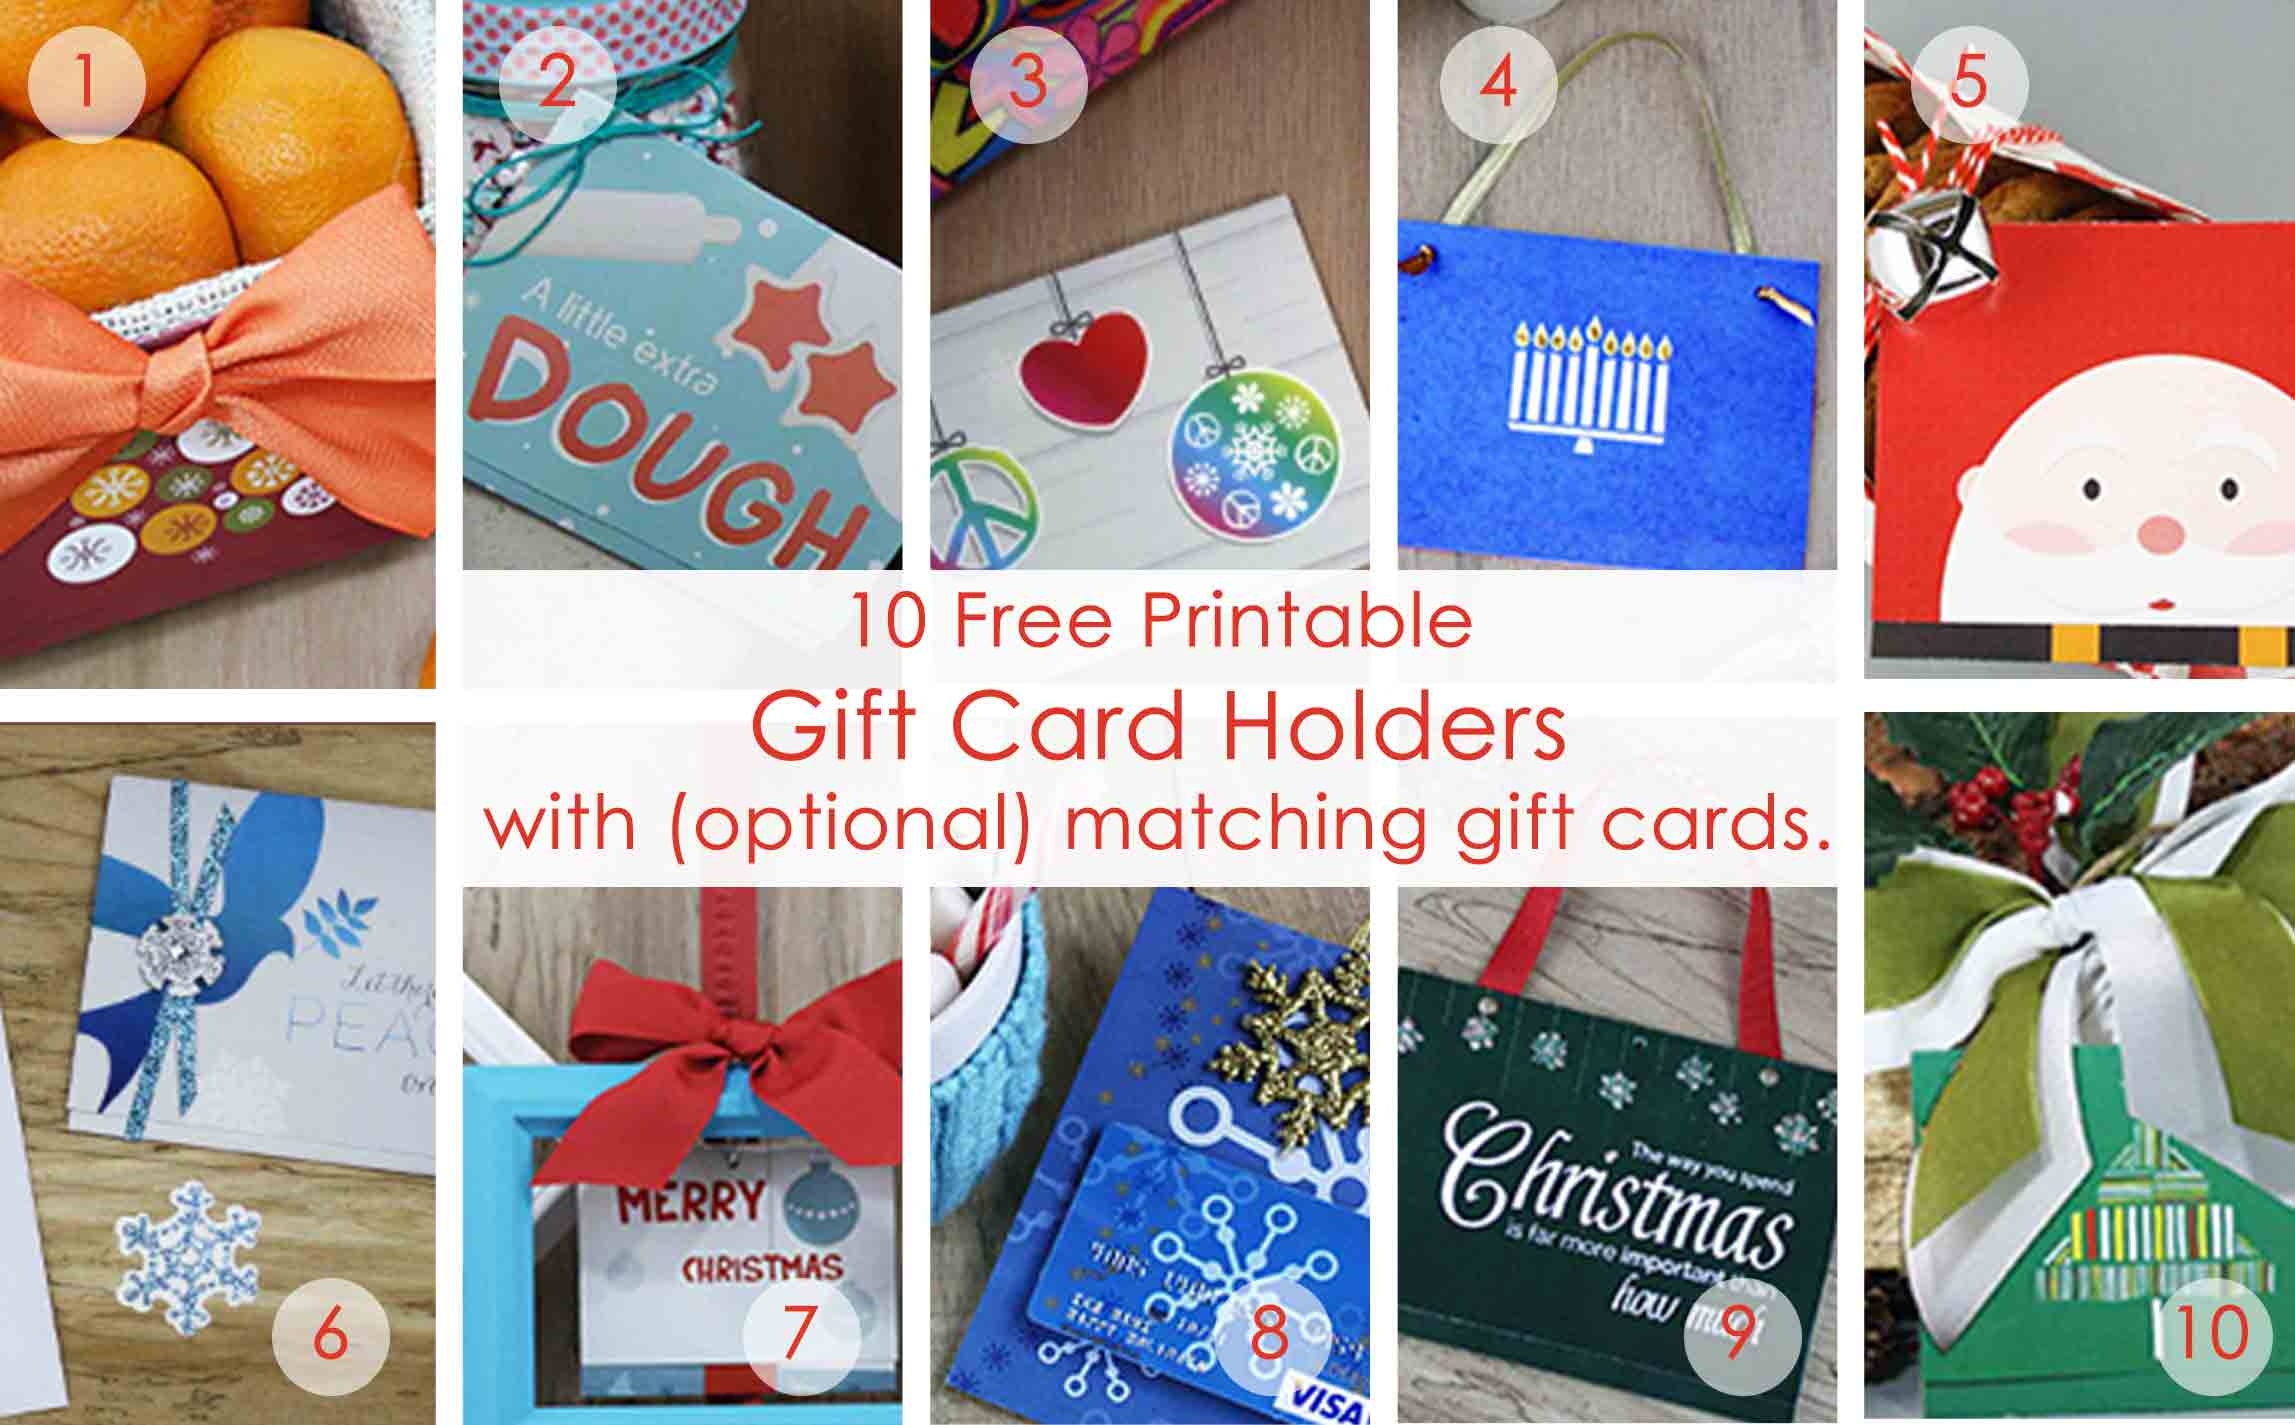 Over 50 Printable Gift Card Holders For The Holidays | Gcg - Free Printable Christmas Gift Cards